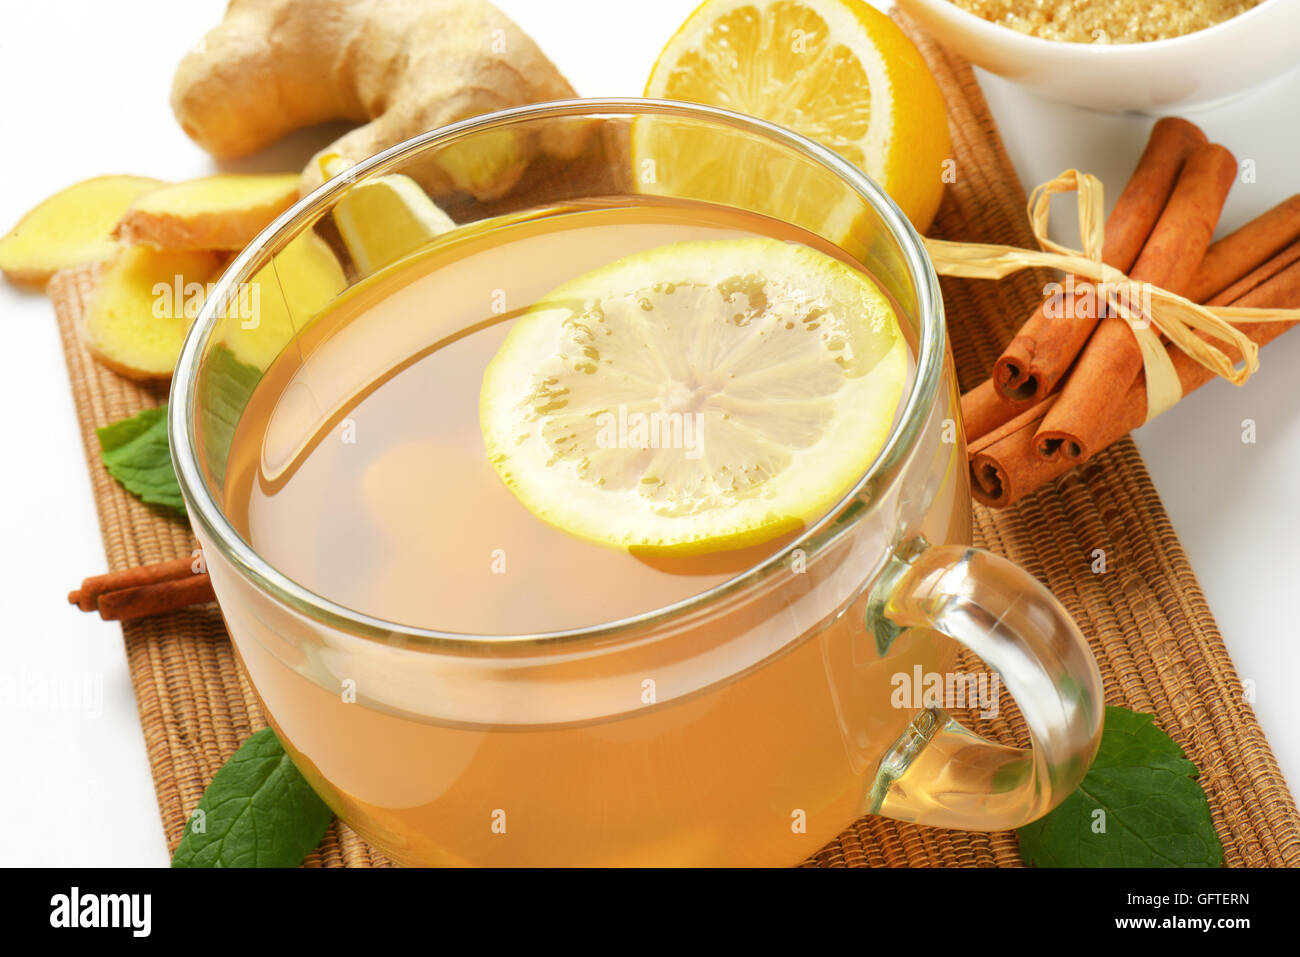 In prossimità della tazza di tè allo zenzero con succo di limone, lo zenzero fresco e cannella sul tagliere di legno Foto Stock